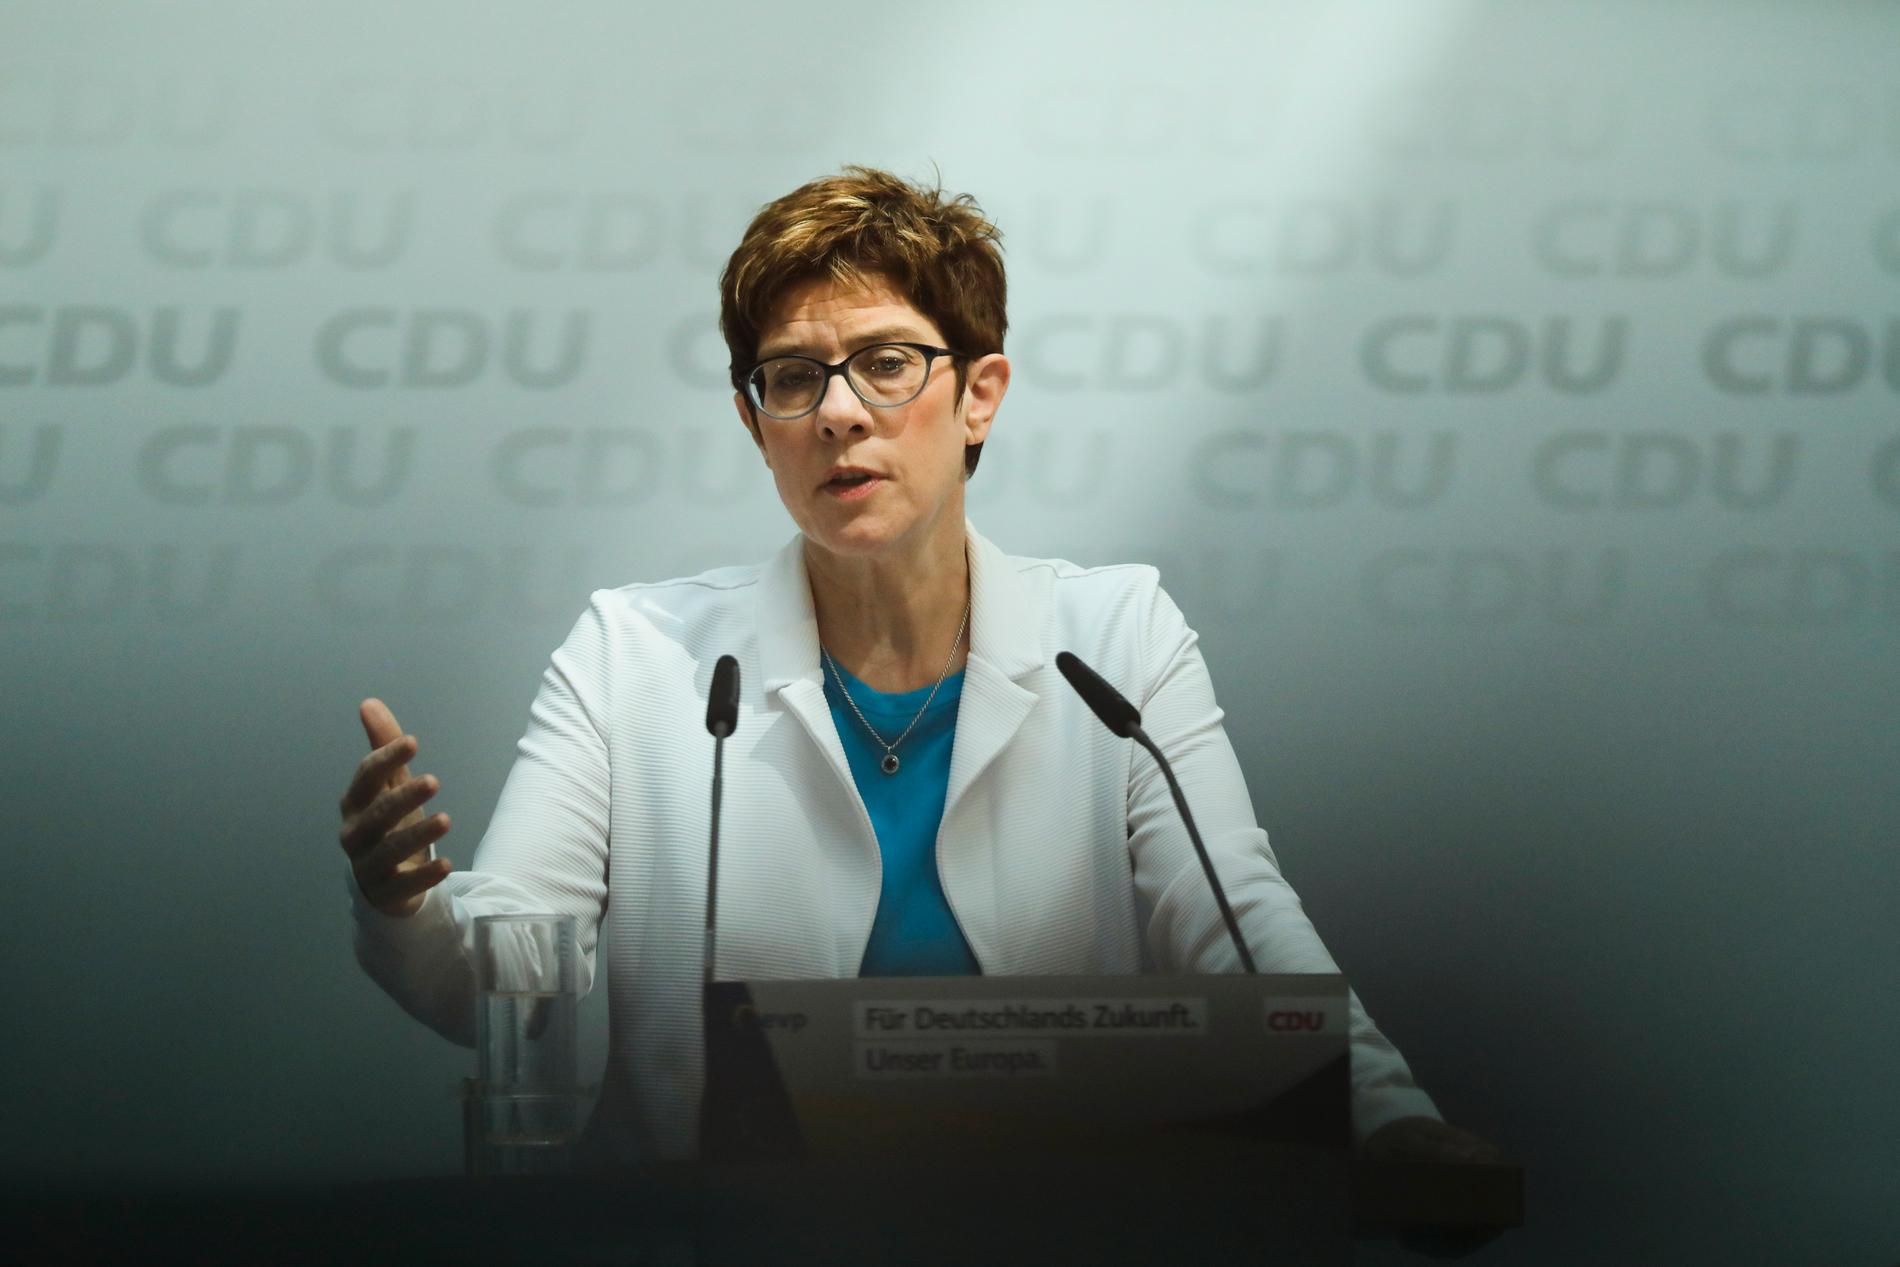 CDU-ledaren Annegret Kramp-Karrenbauer uppges ta över som försvarsminister efter Ursula von der Leyen. Arkivbild.